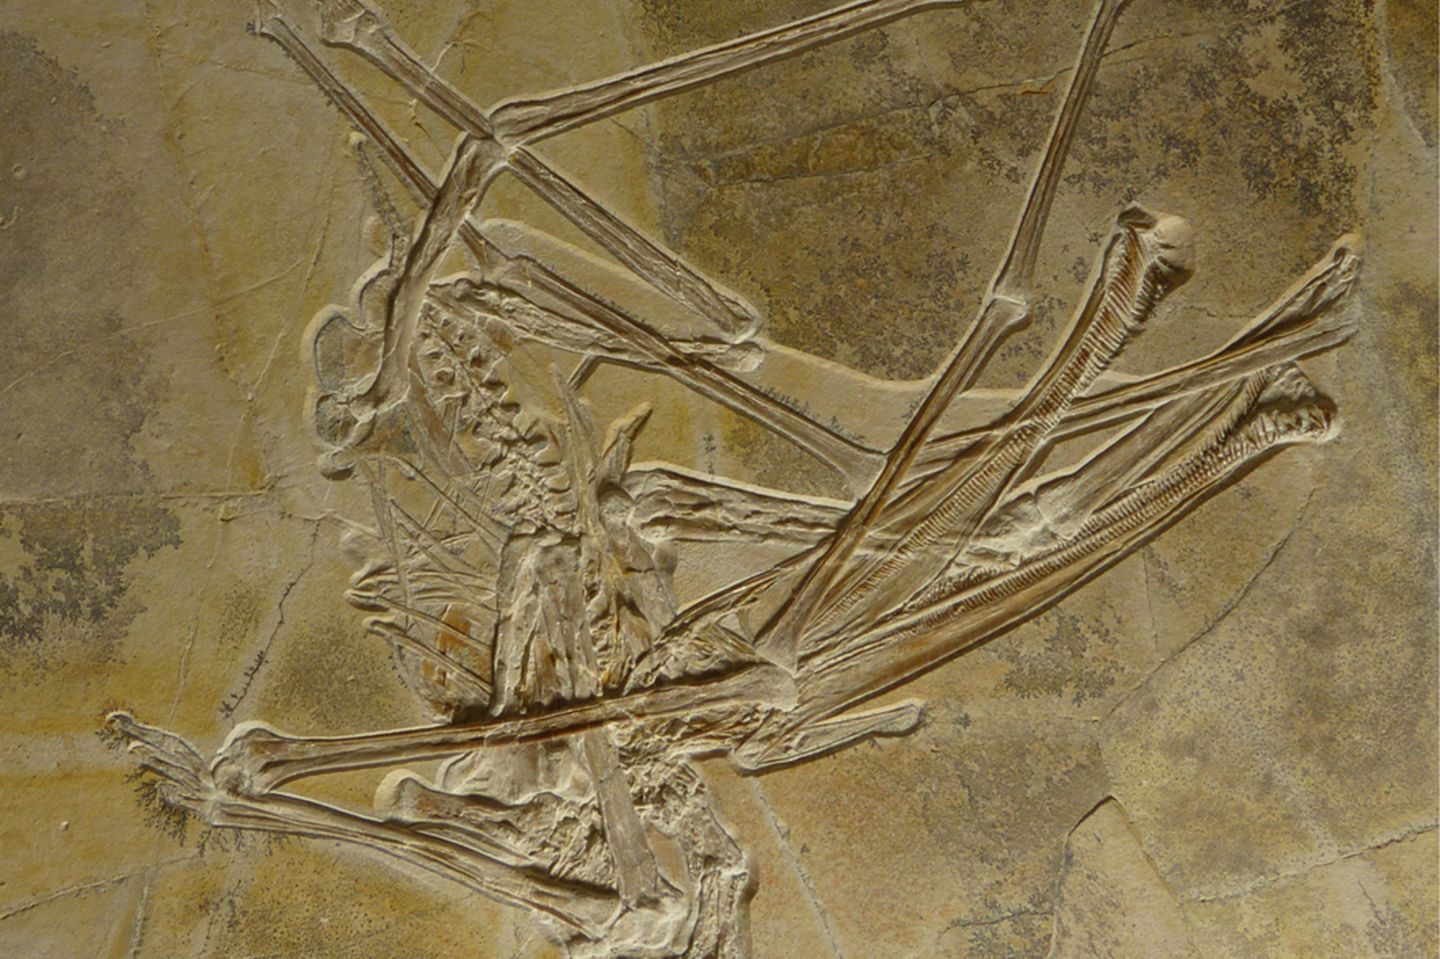 Das Fossil des neu entdeckten Flugsauriers Balaenognathus maeuseri ist ungewöhnlich gut erhalten